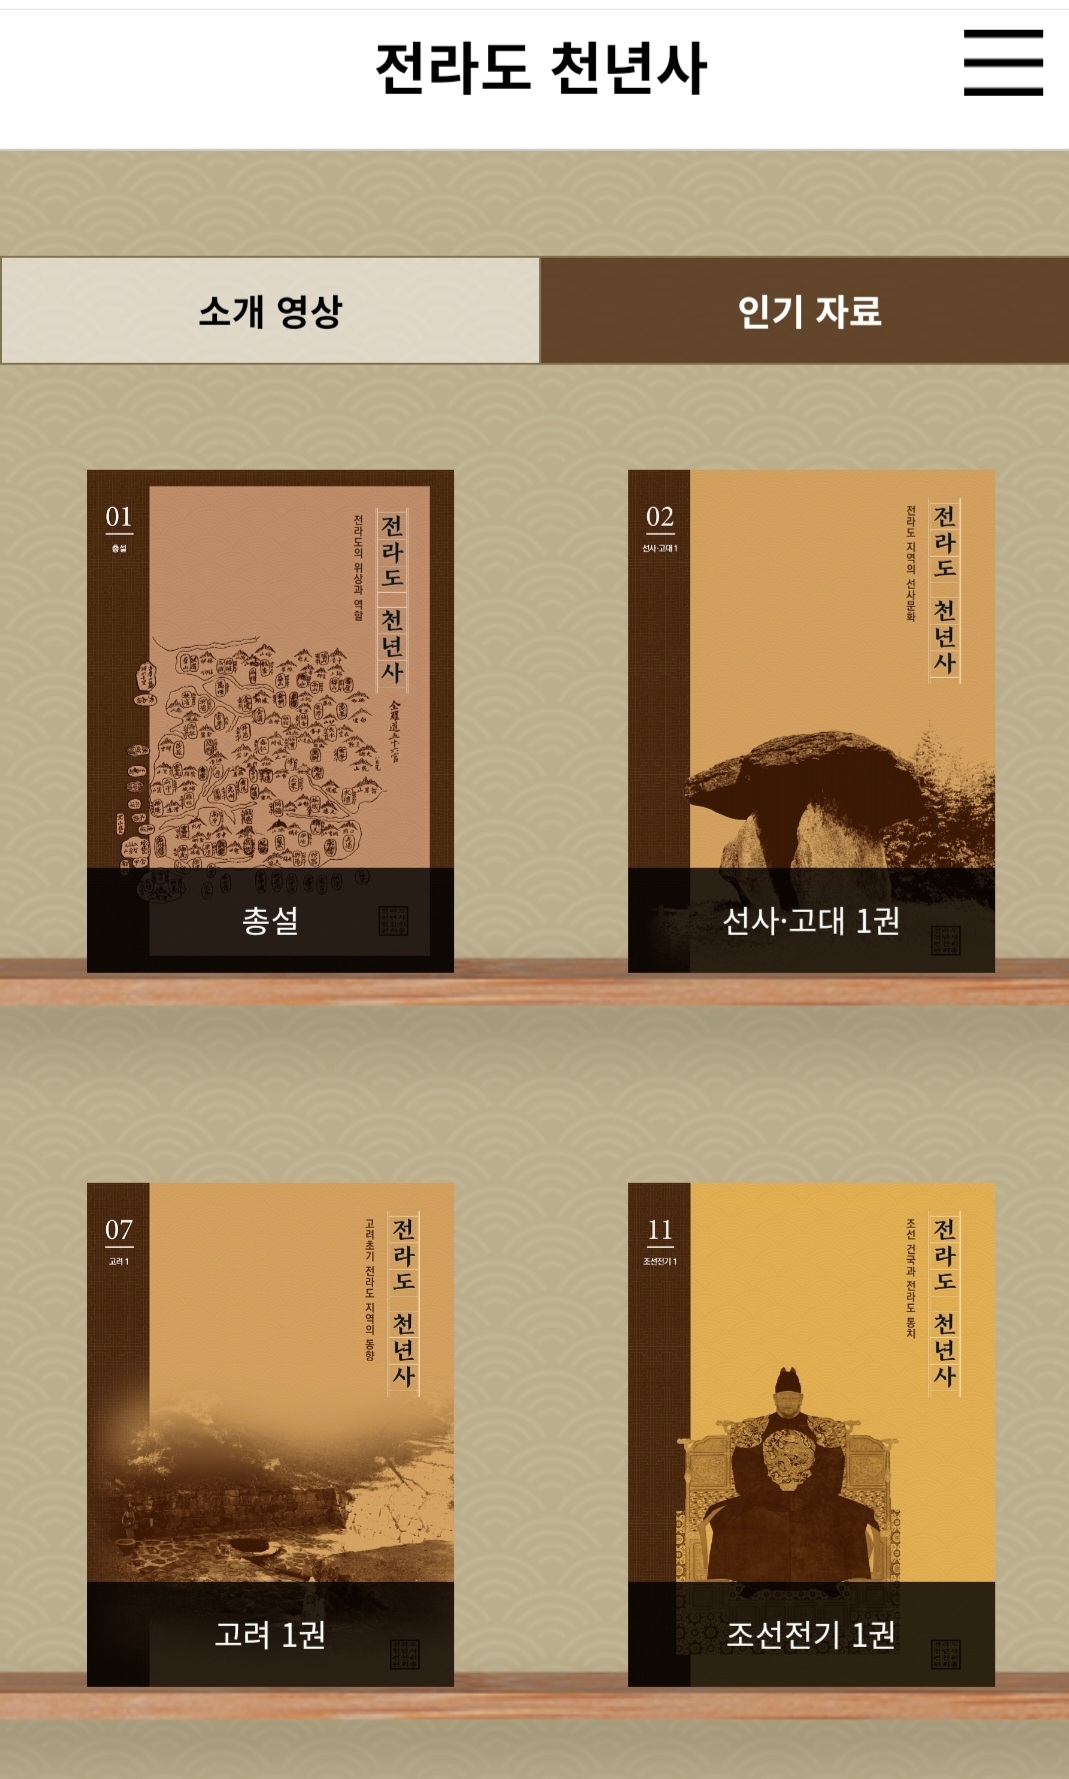 e-book 형태로 공개된 전라도 천년사. 전북도 홈페이지